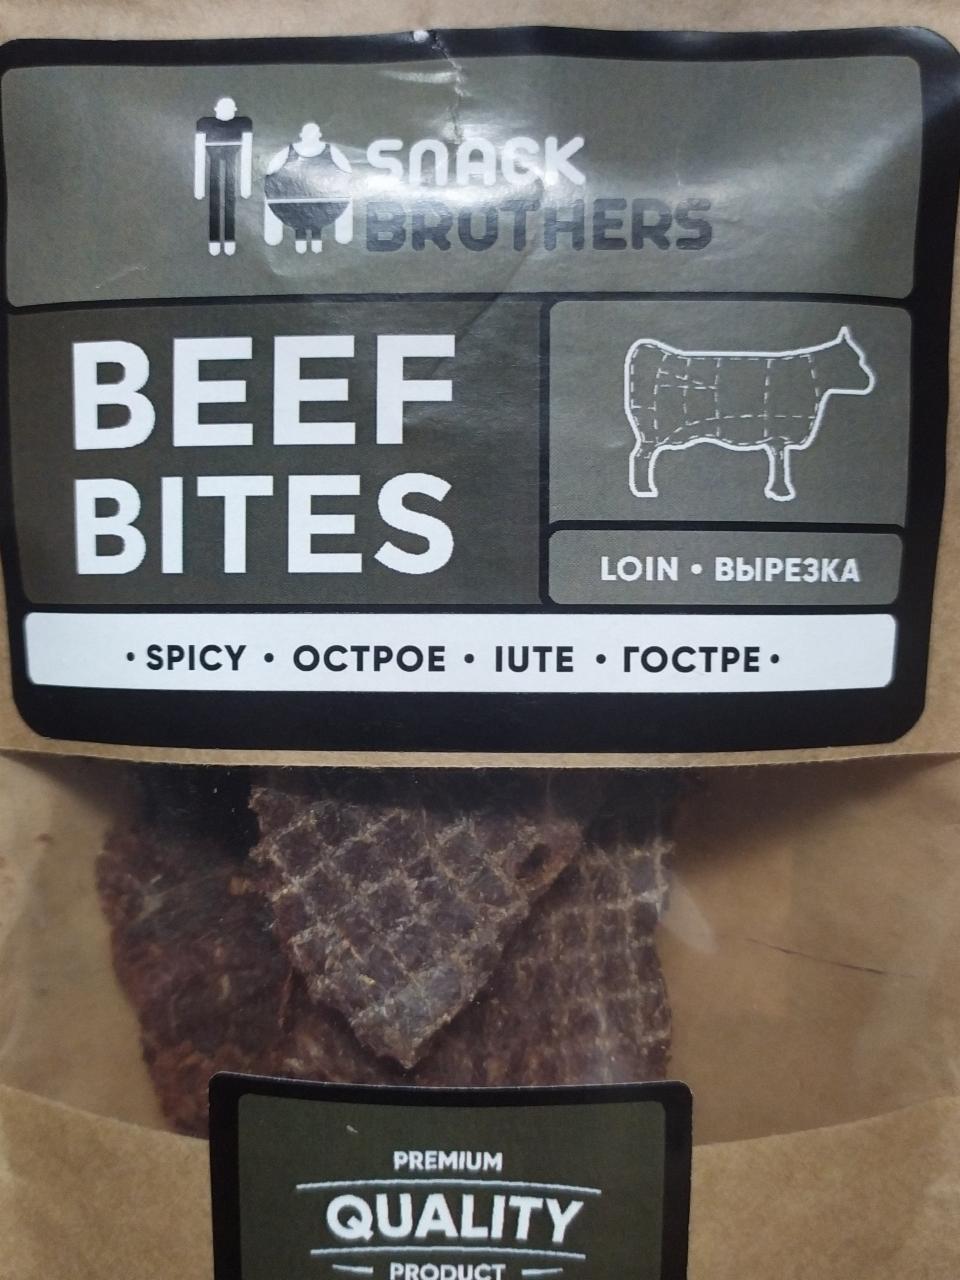 Фото - Beef Bites вяленая говядина Snack Brothers